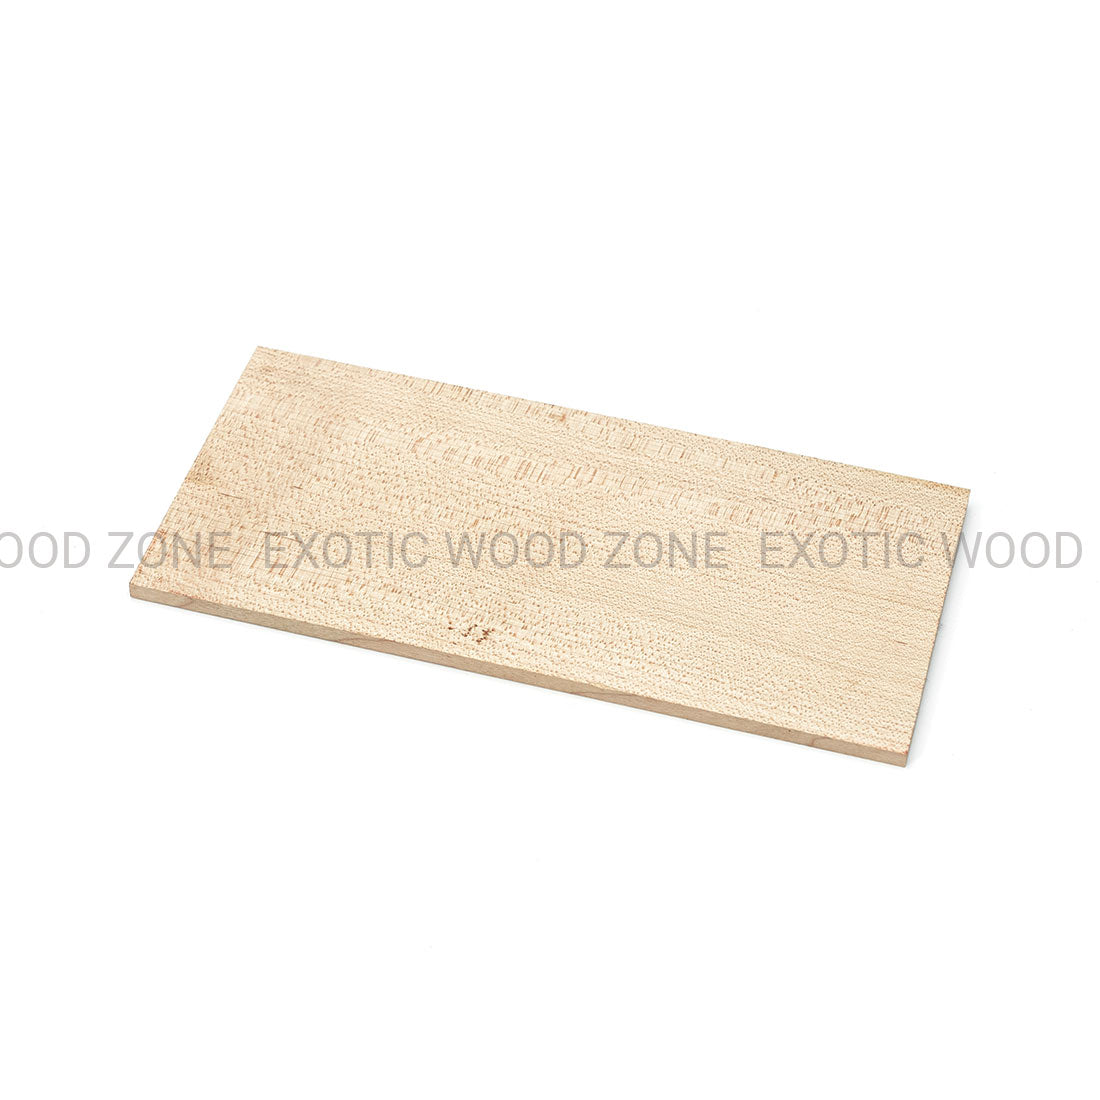 Hard Maple Flat Sawn Headplate Wood Blank Exotic Wood Zone Headplates